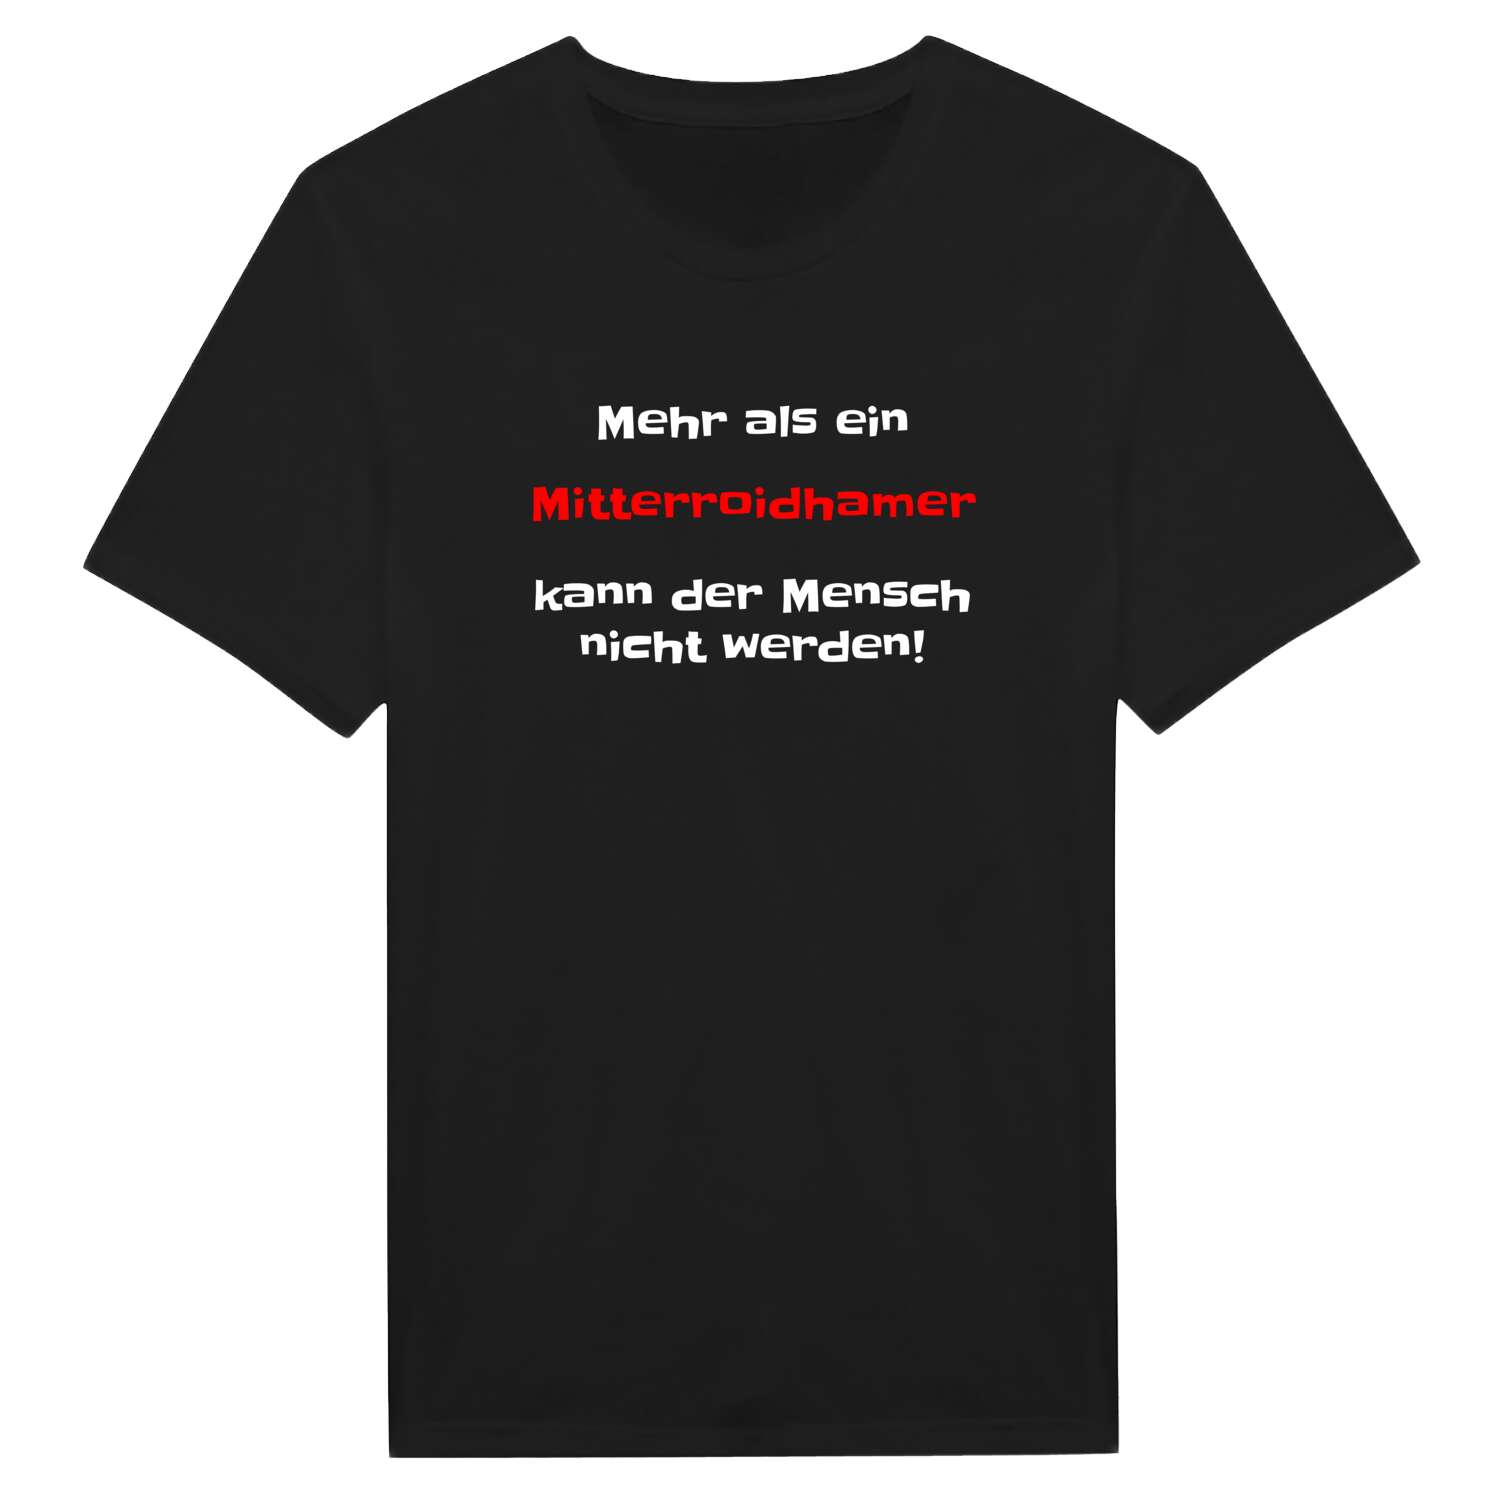 Mitterroidham T-Shirt »Mehr als ein«